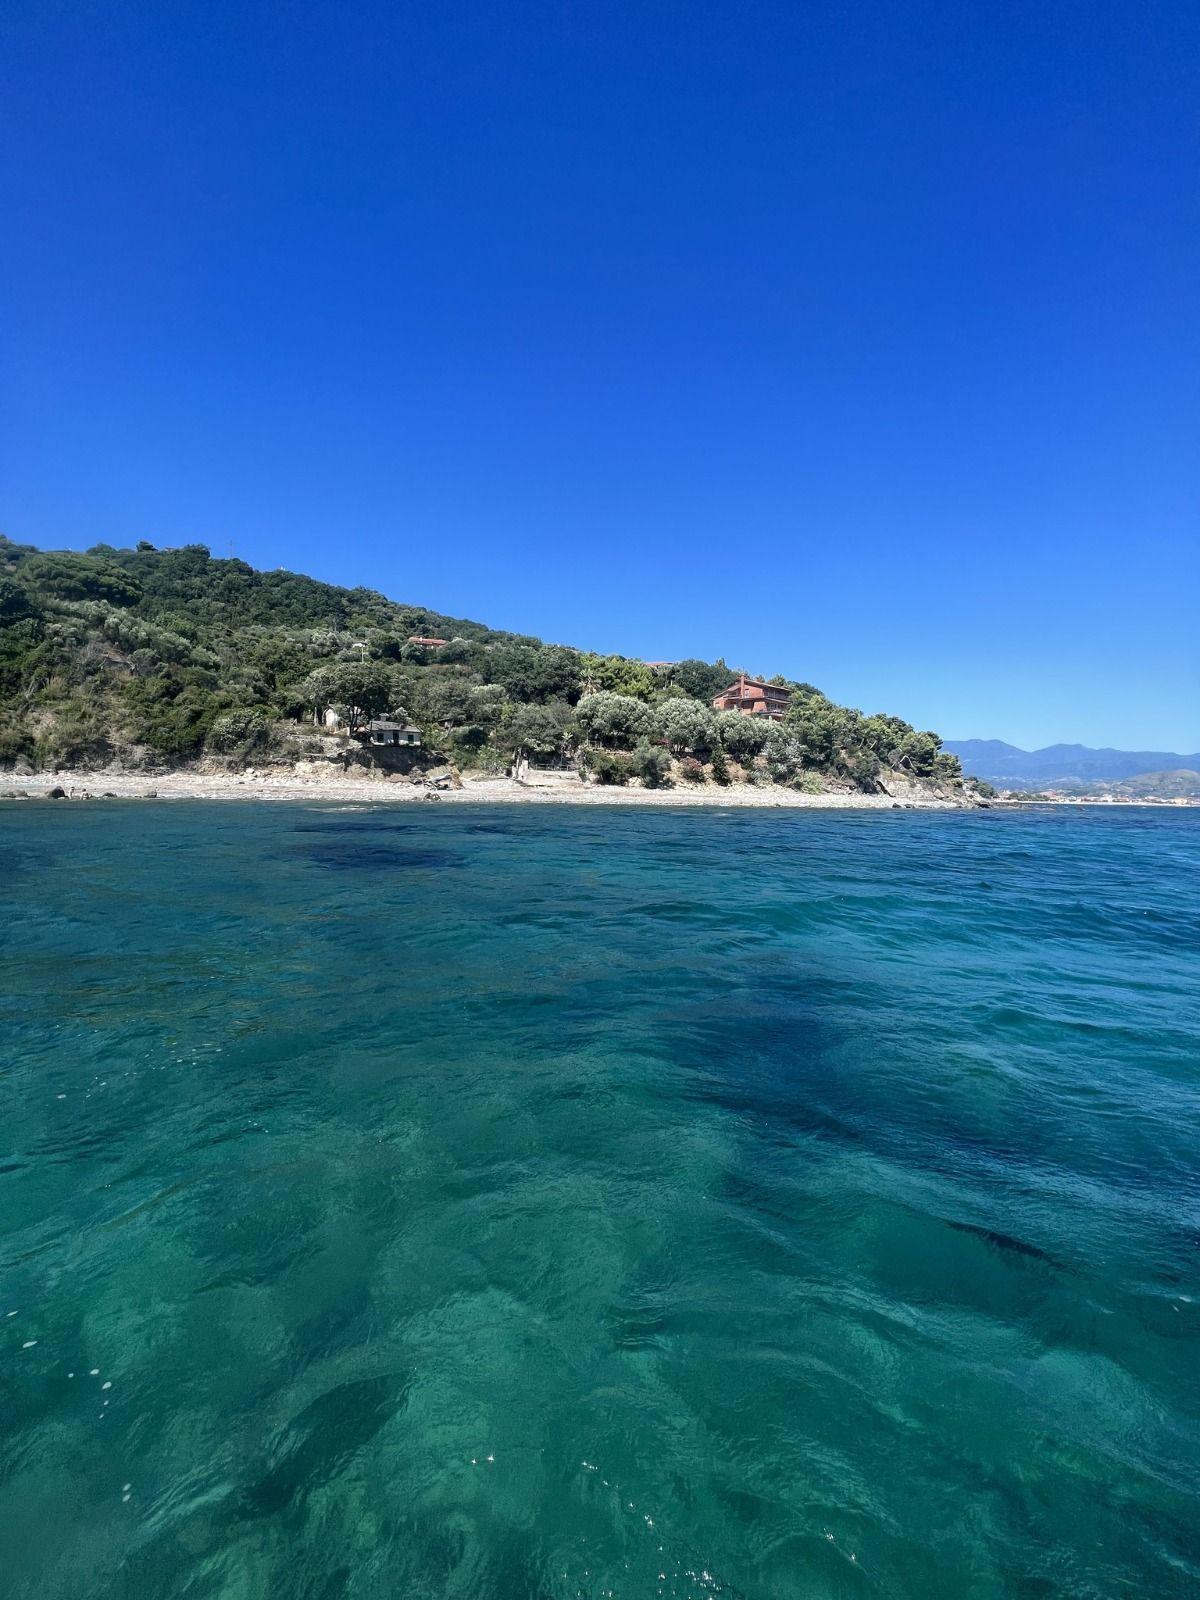 Wohnen in Traumhafter, ruhiger Lage am Meer Ferienhaus in Italien